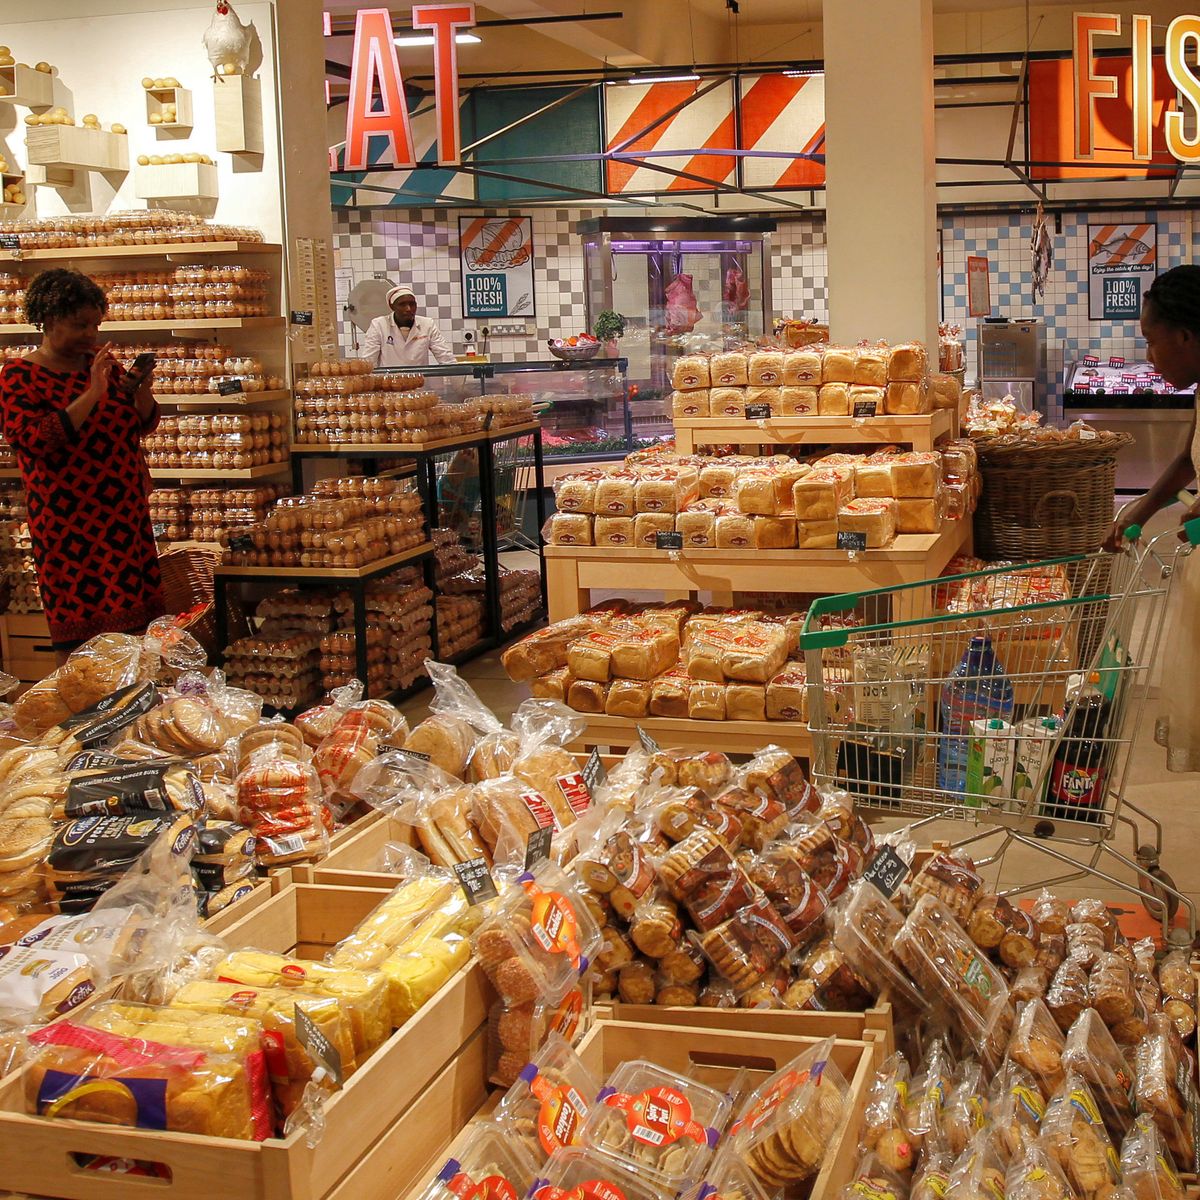 Pan de molde saludable del supermercado